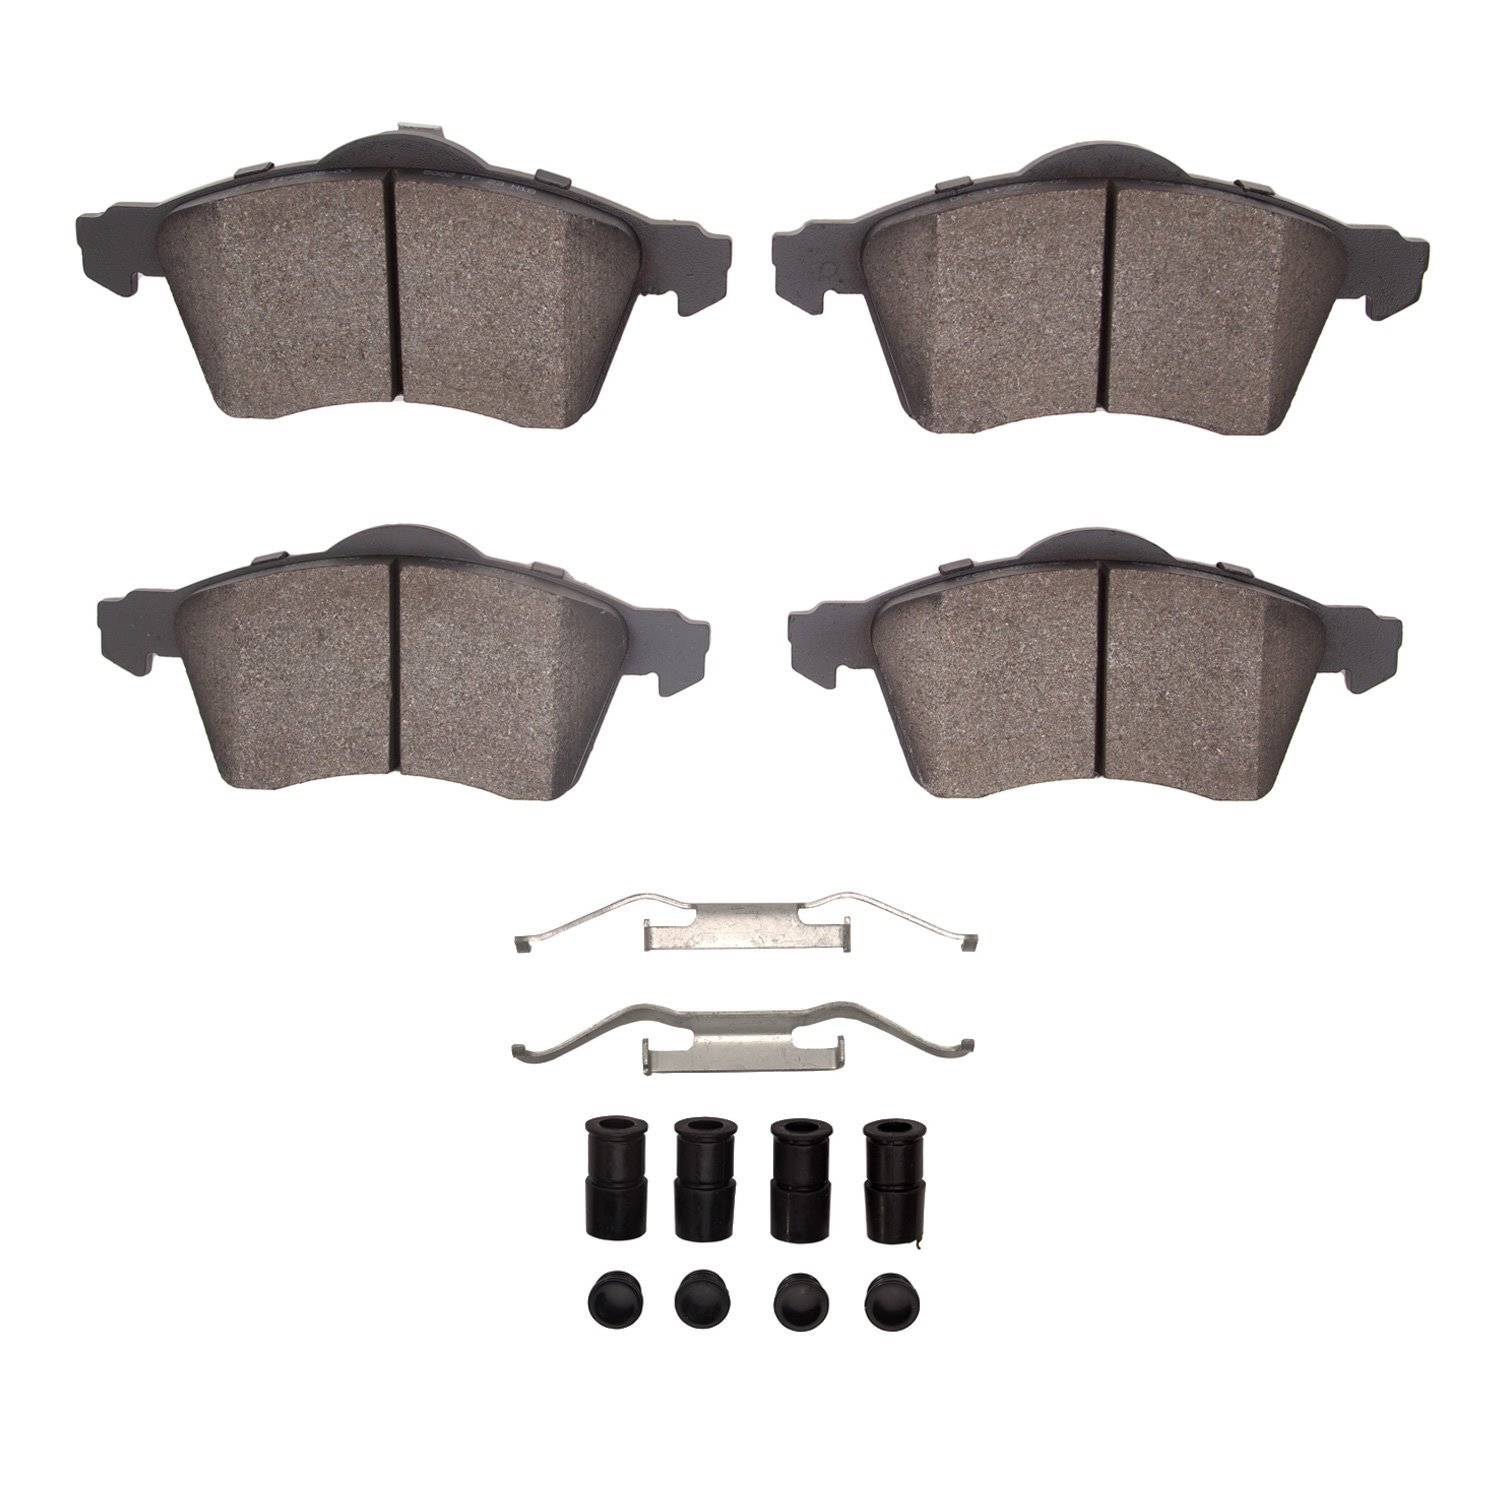 1311-0705-01 3000-Series Semi-Metallic Brake Pads & Hardware Kit, 1996-1996 Audi/Volkswagen, Position: Front